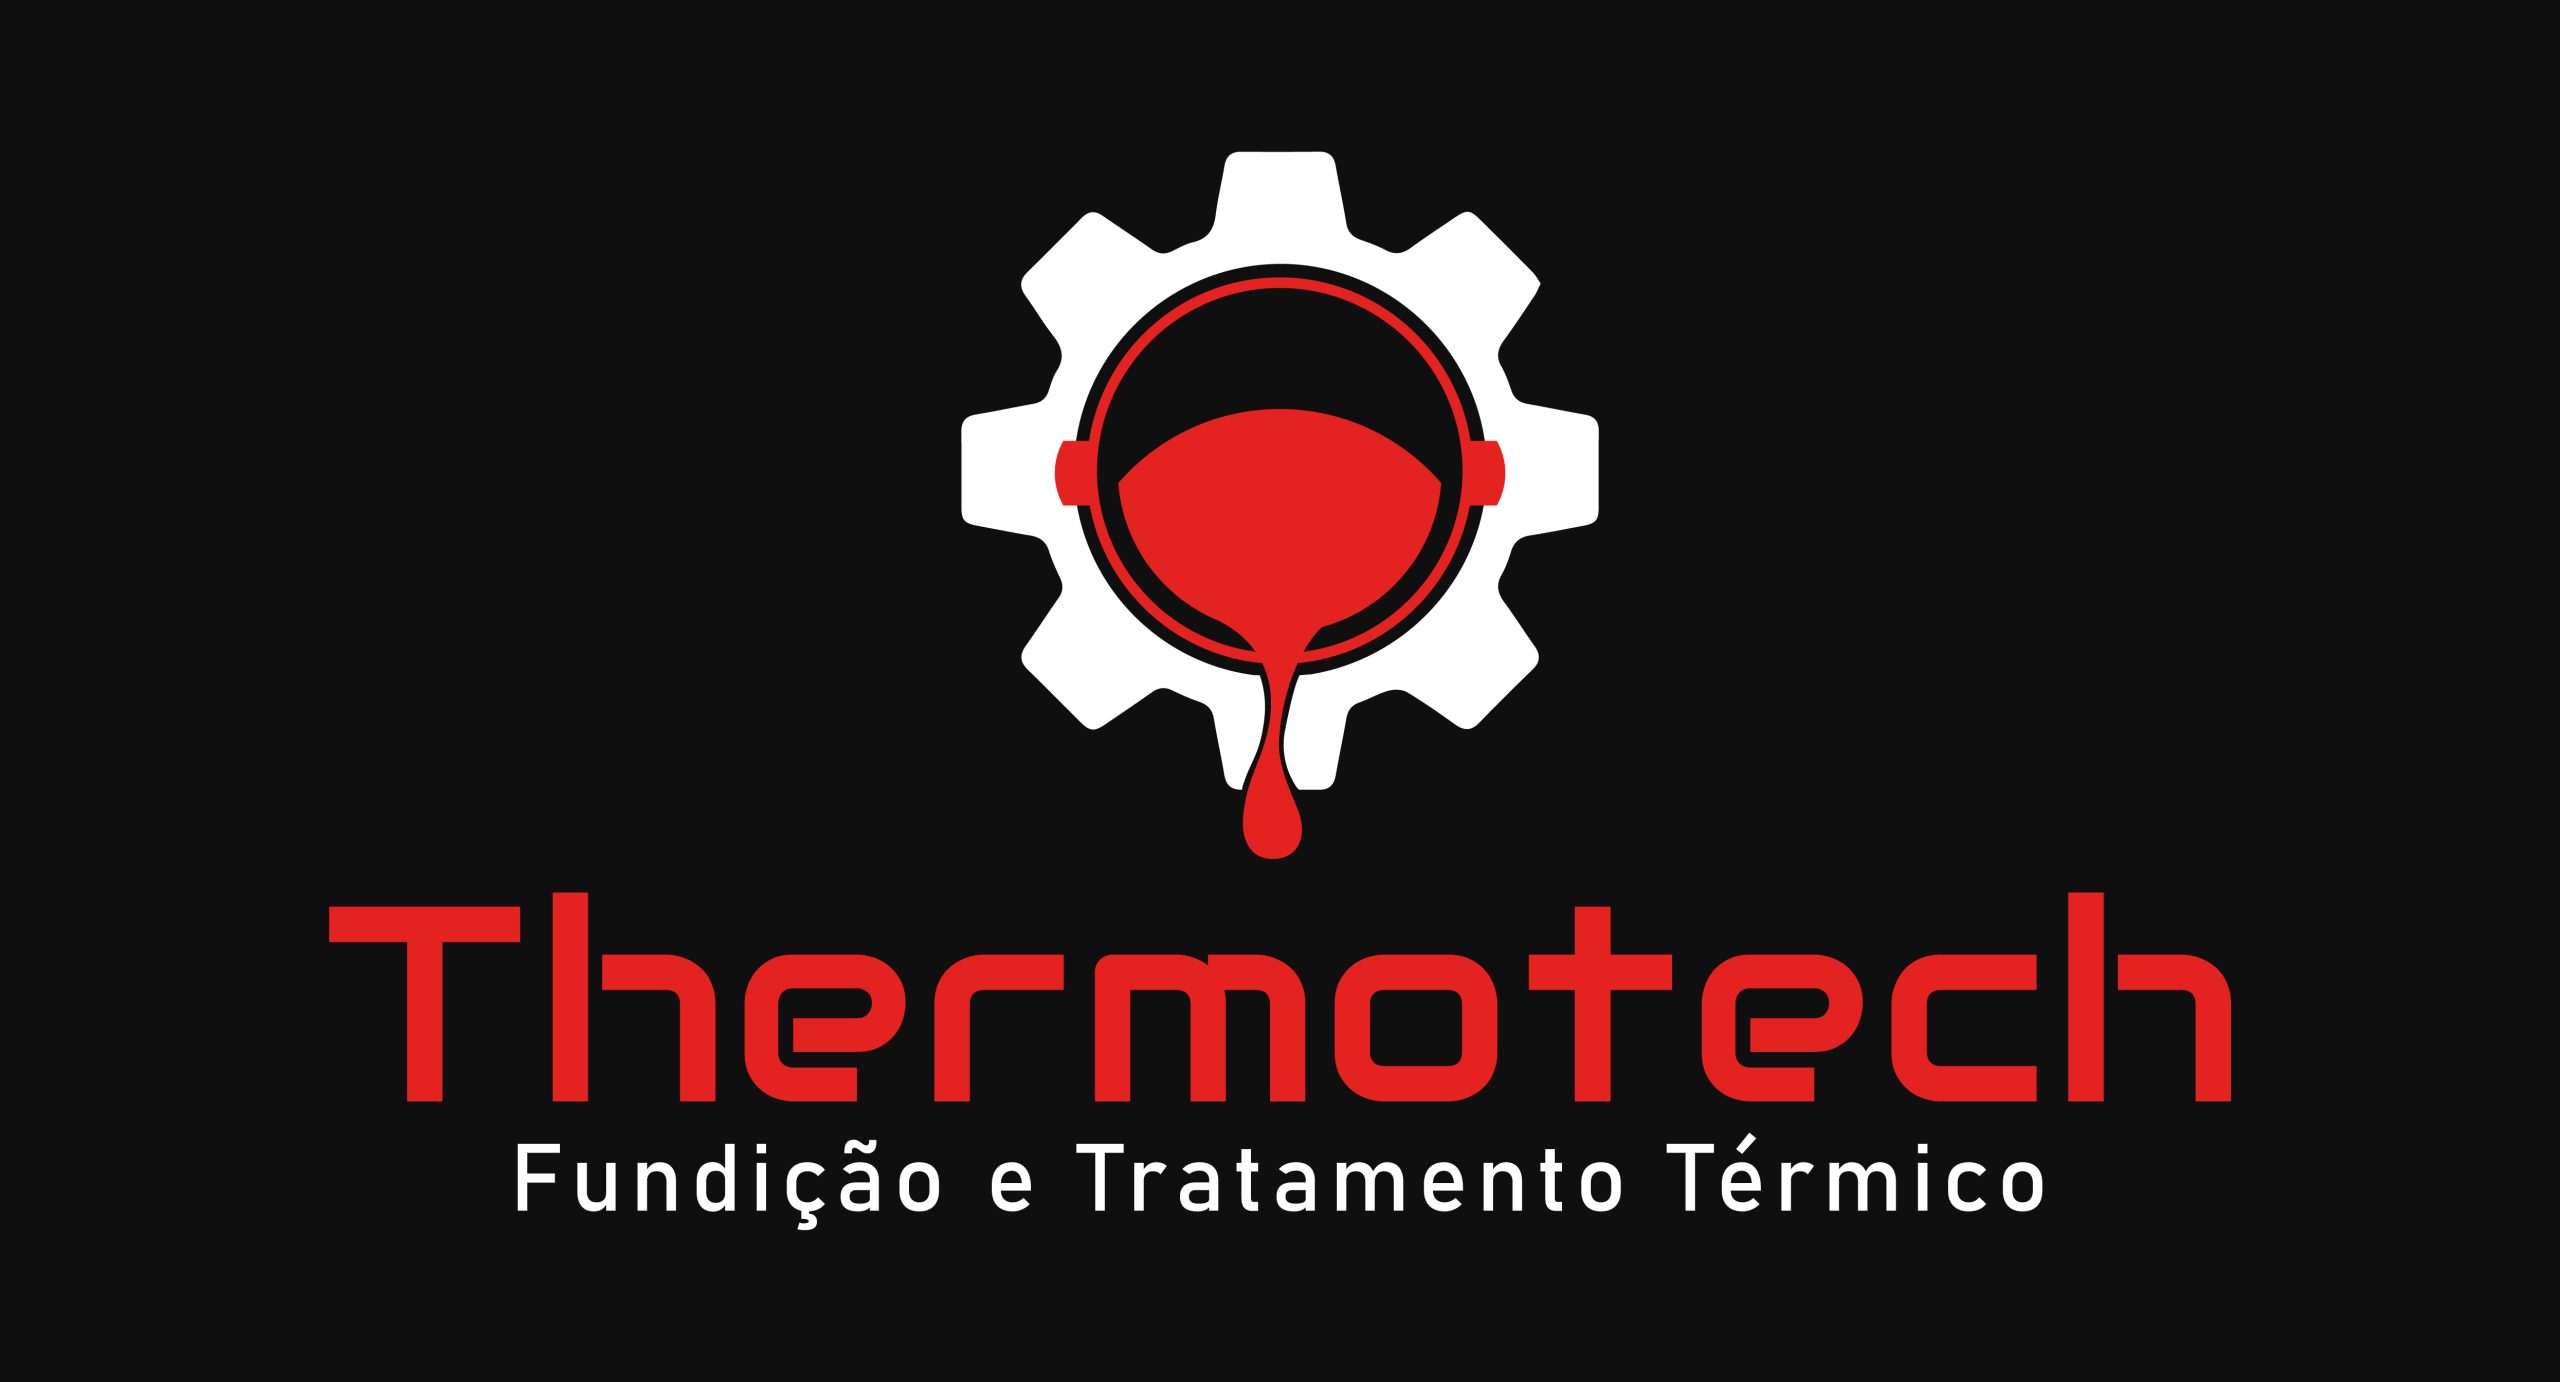 Logotipo - Thermotech Fundição e Tratamento Térmico